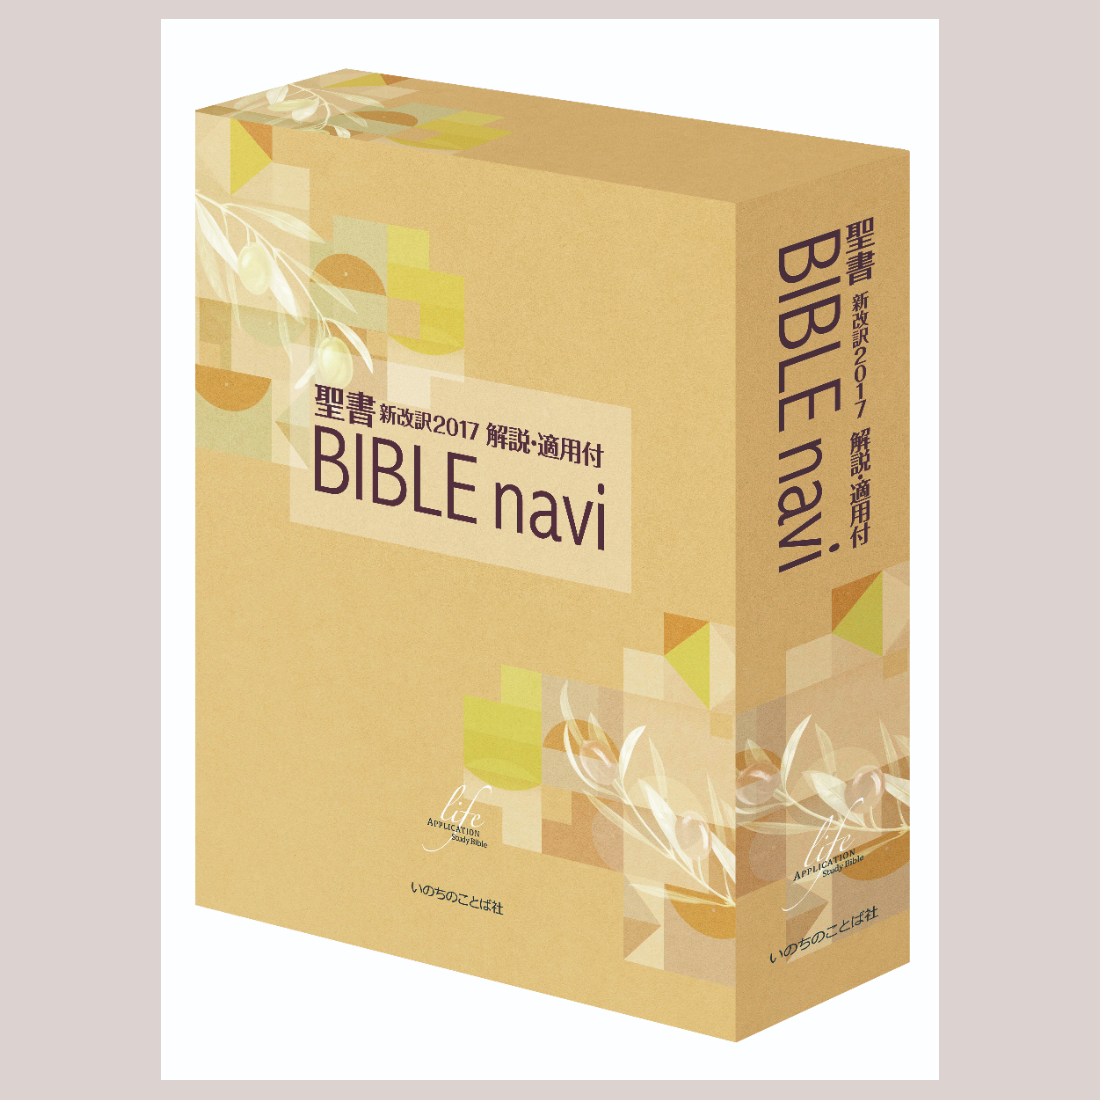 BIBLE navi 聖書 新改訳2017 解説・適用付 | 聖書やキリスト教書籍の 